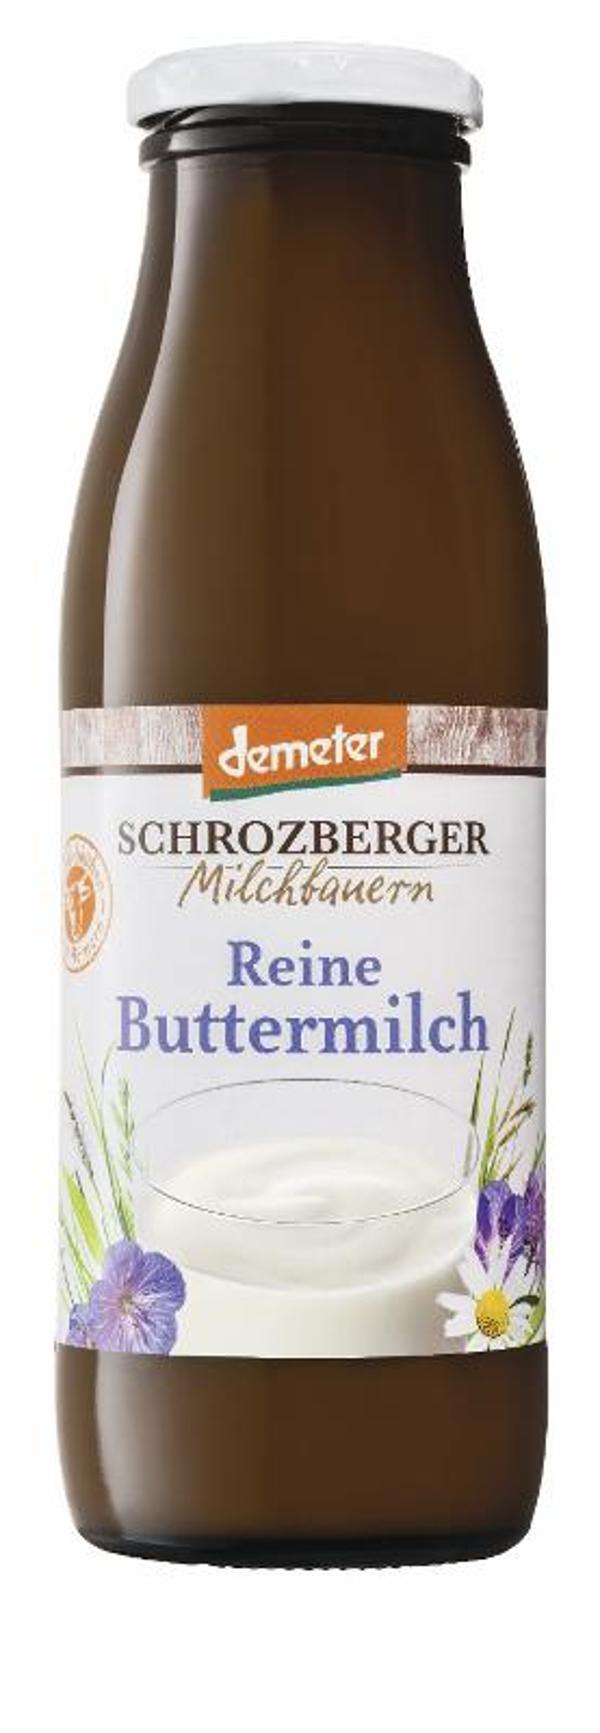 Produktfoto zu Reine Buttermilch von Schrozberger